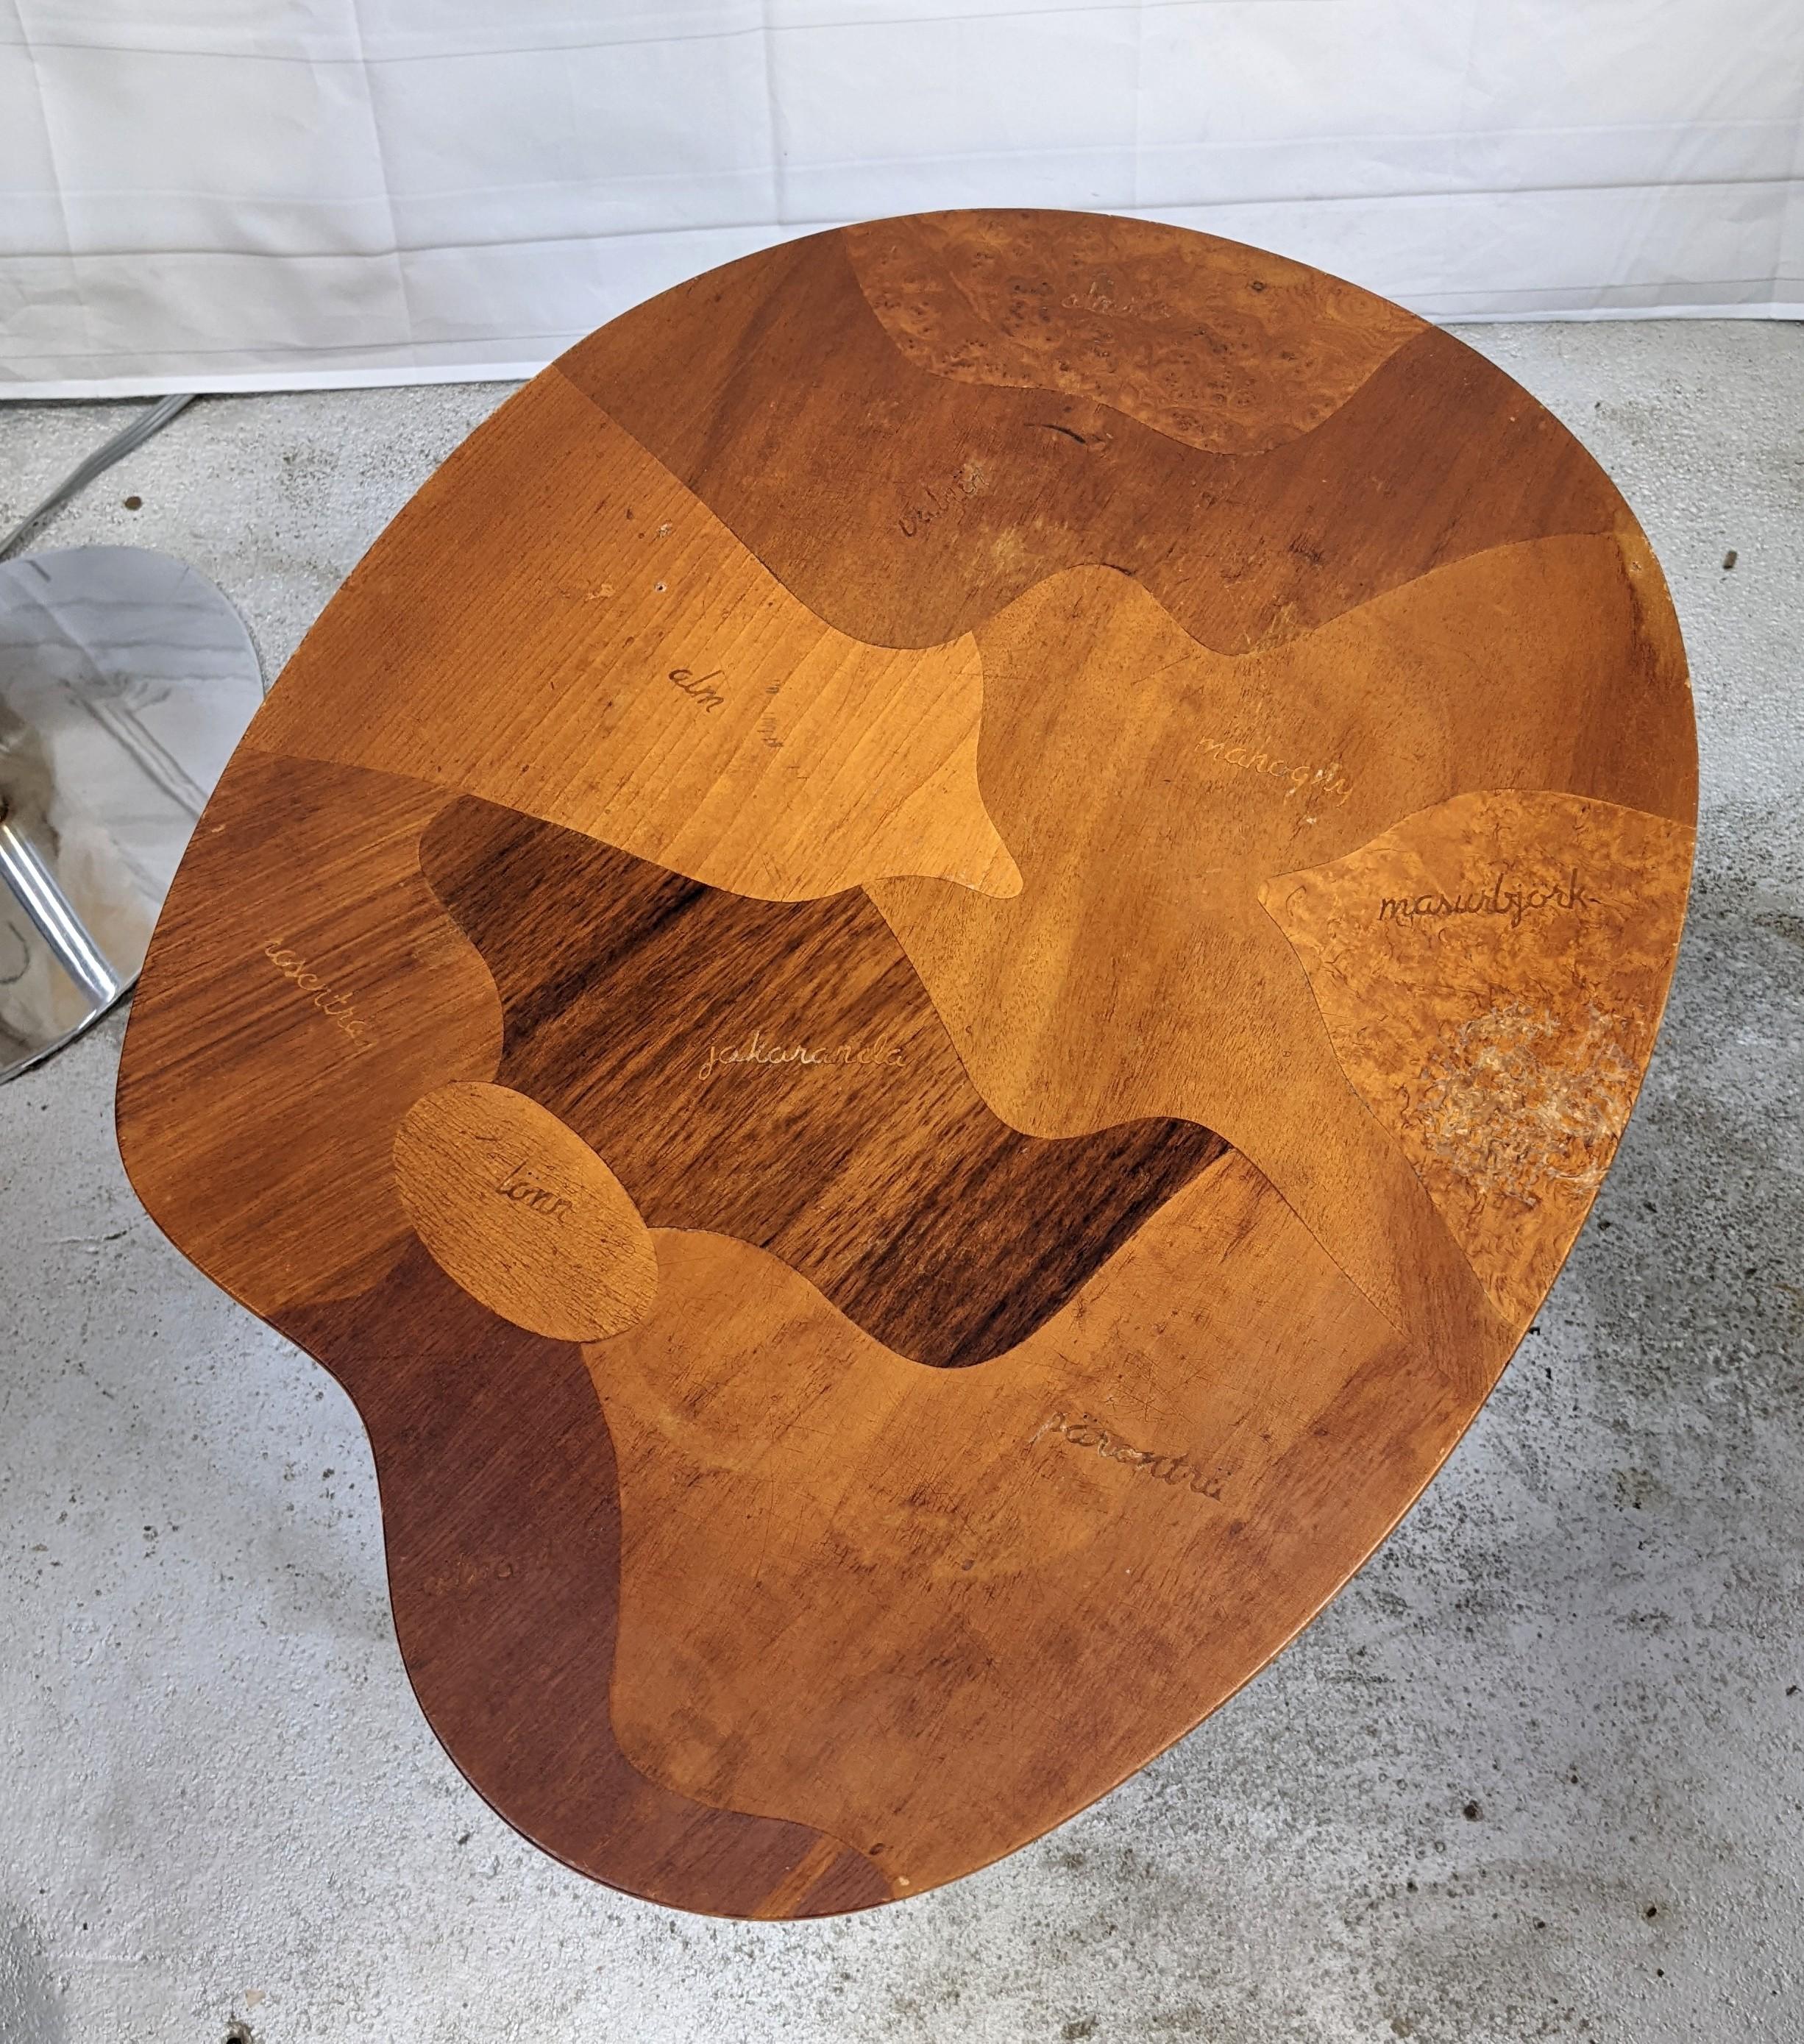 Charmante table suédoise en forme de palette avec des spécimens de bois datant des années 1950. Design/One typique en forme de palette, avec l'ajout d'incrustations en parquet de bois spécimen, les noms des espèces étant incrustés dans chaque